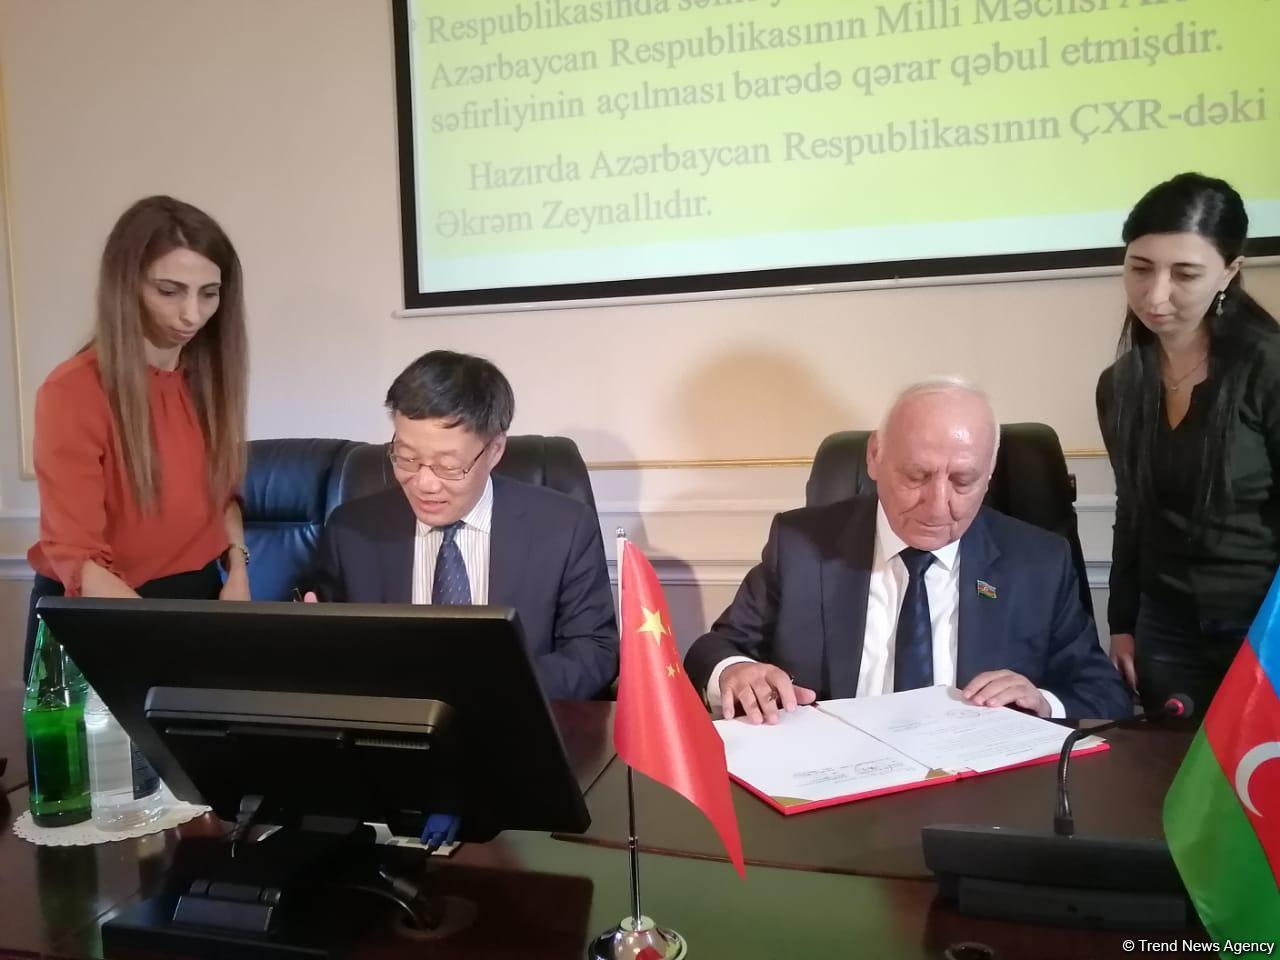 Azerbaijan, China to create scientific centers to study ties [PHOTO]